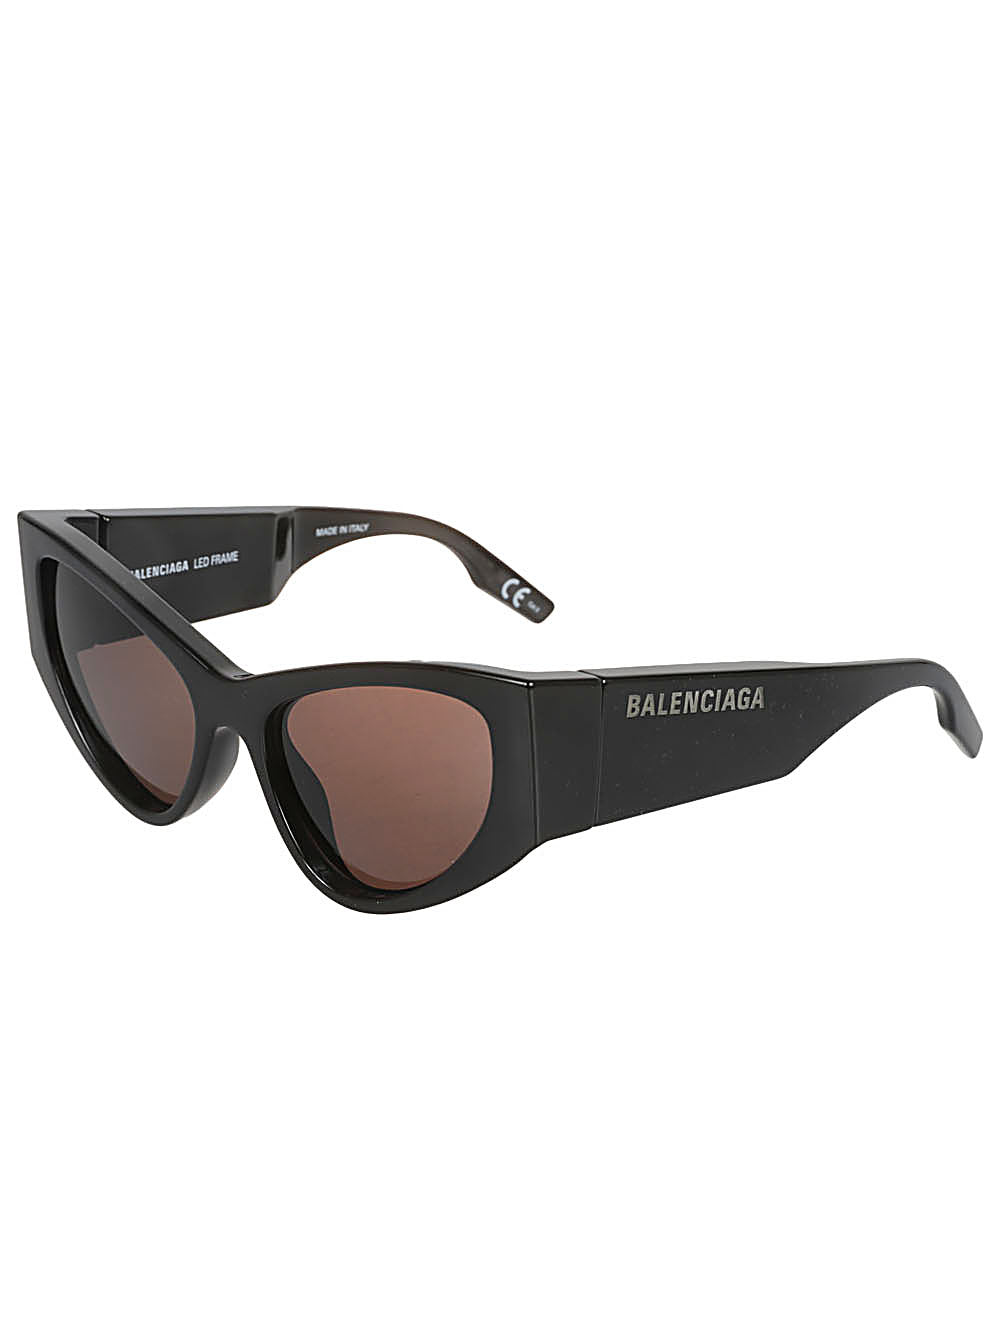 經典黑色 Balenciaga 太陽眼鏡